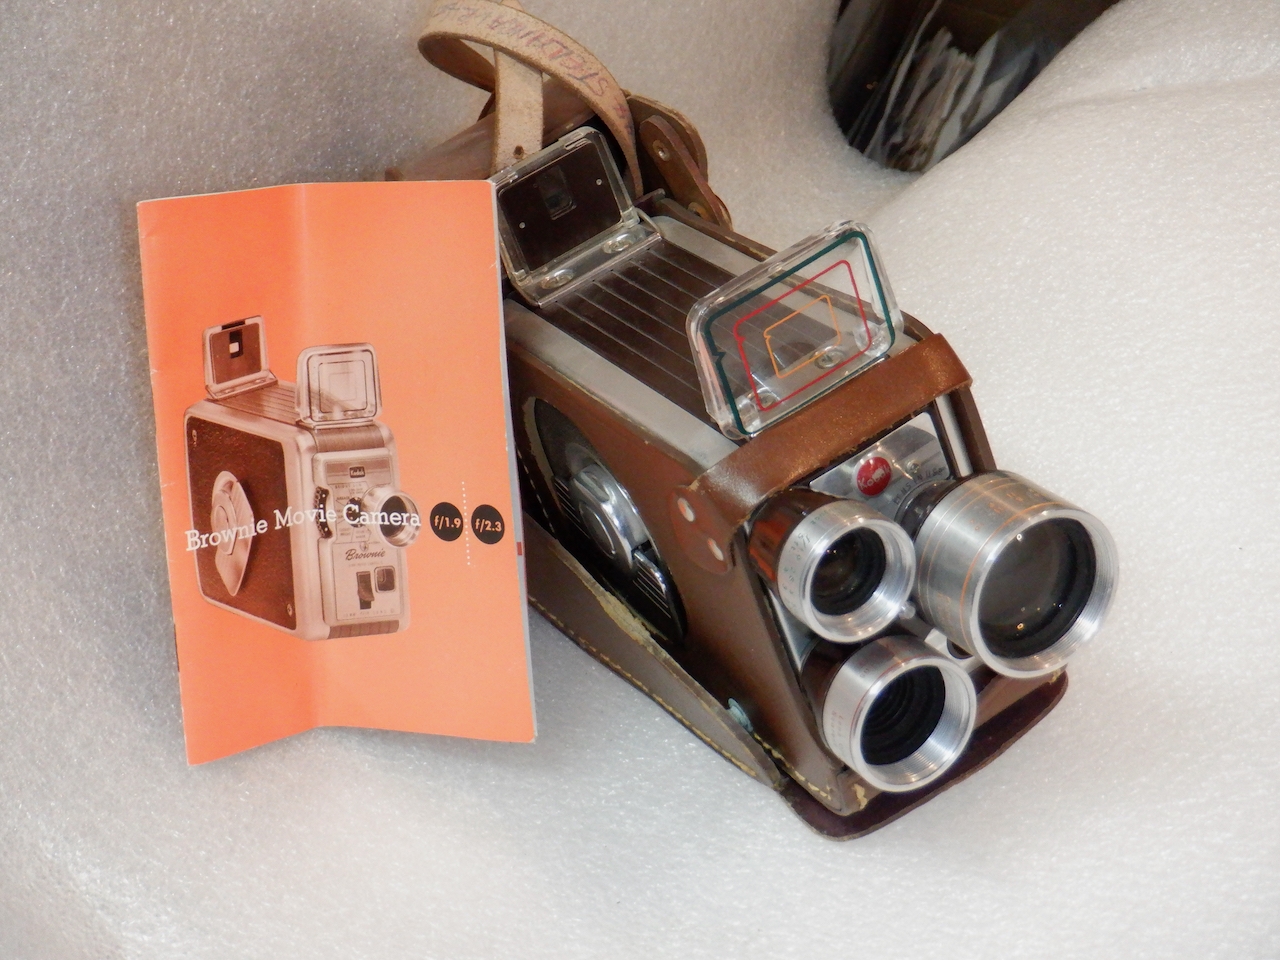 Kodak brownie movie camera